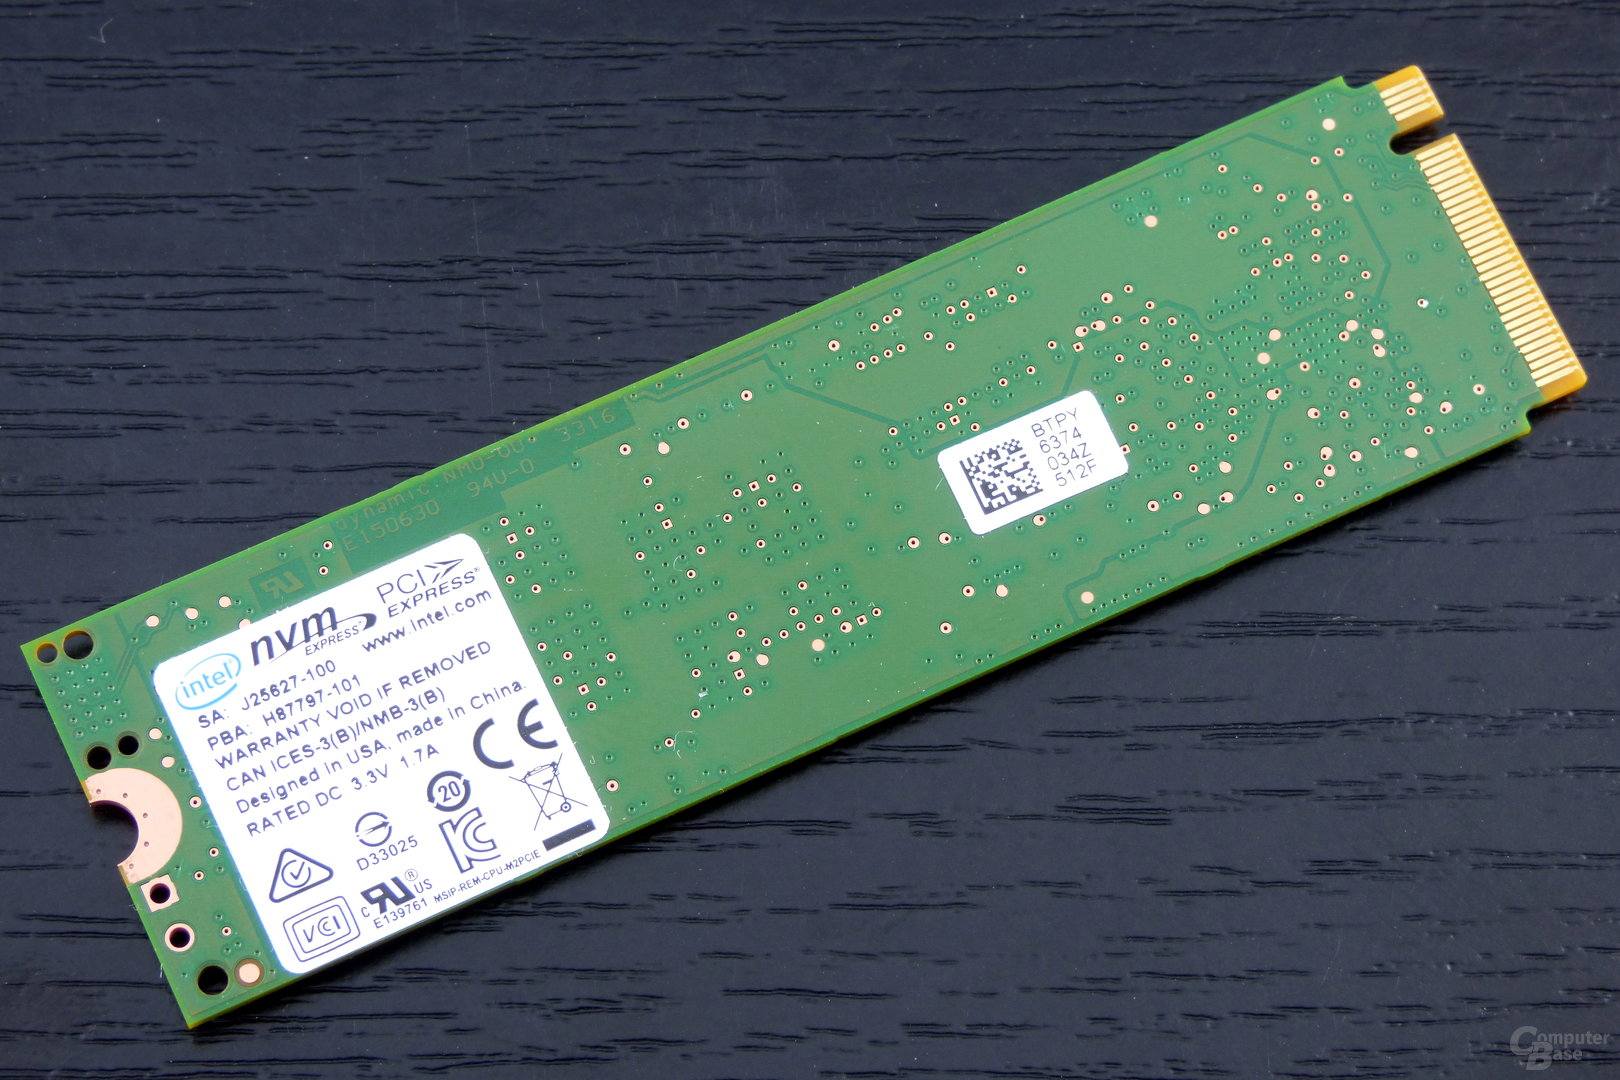 Intel SSD 600p: Die Rückseite ist nicht bestückt